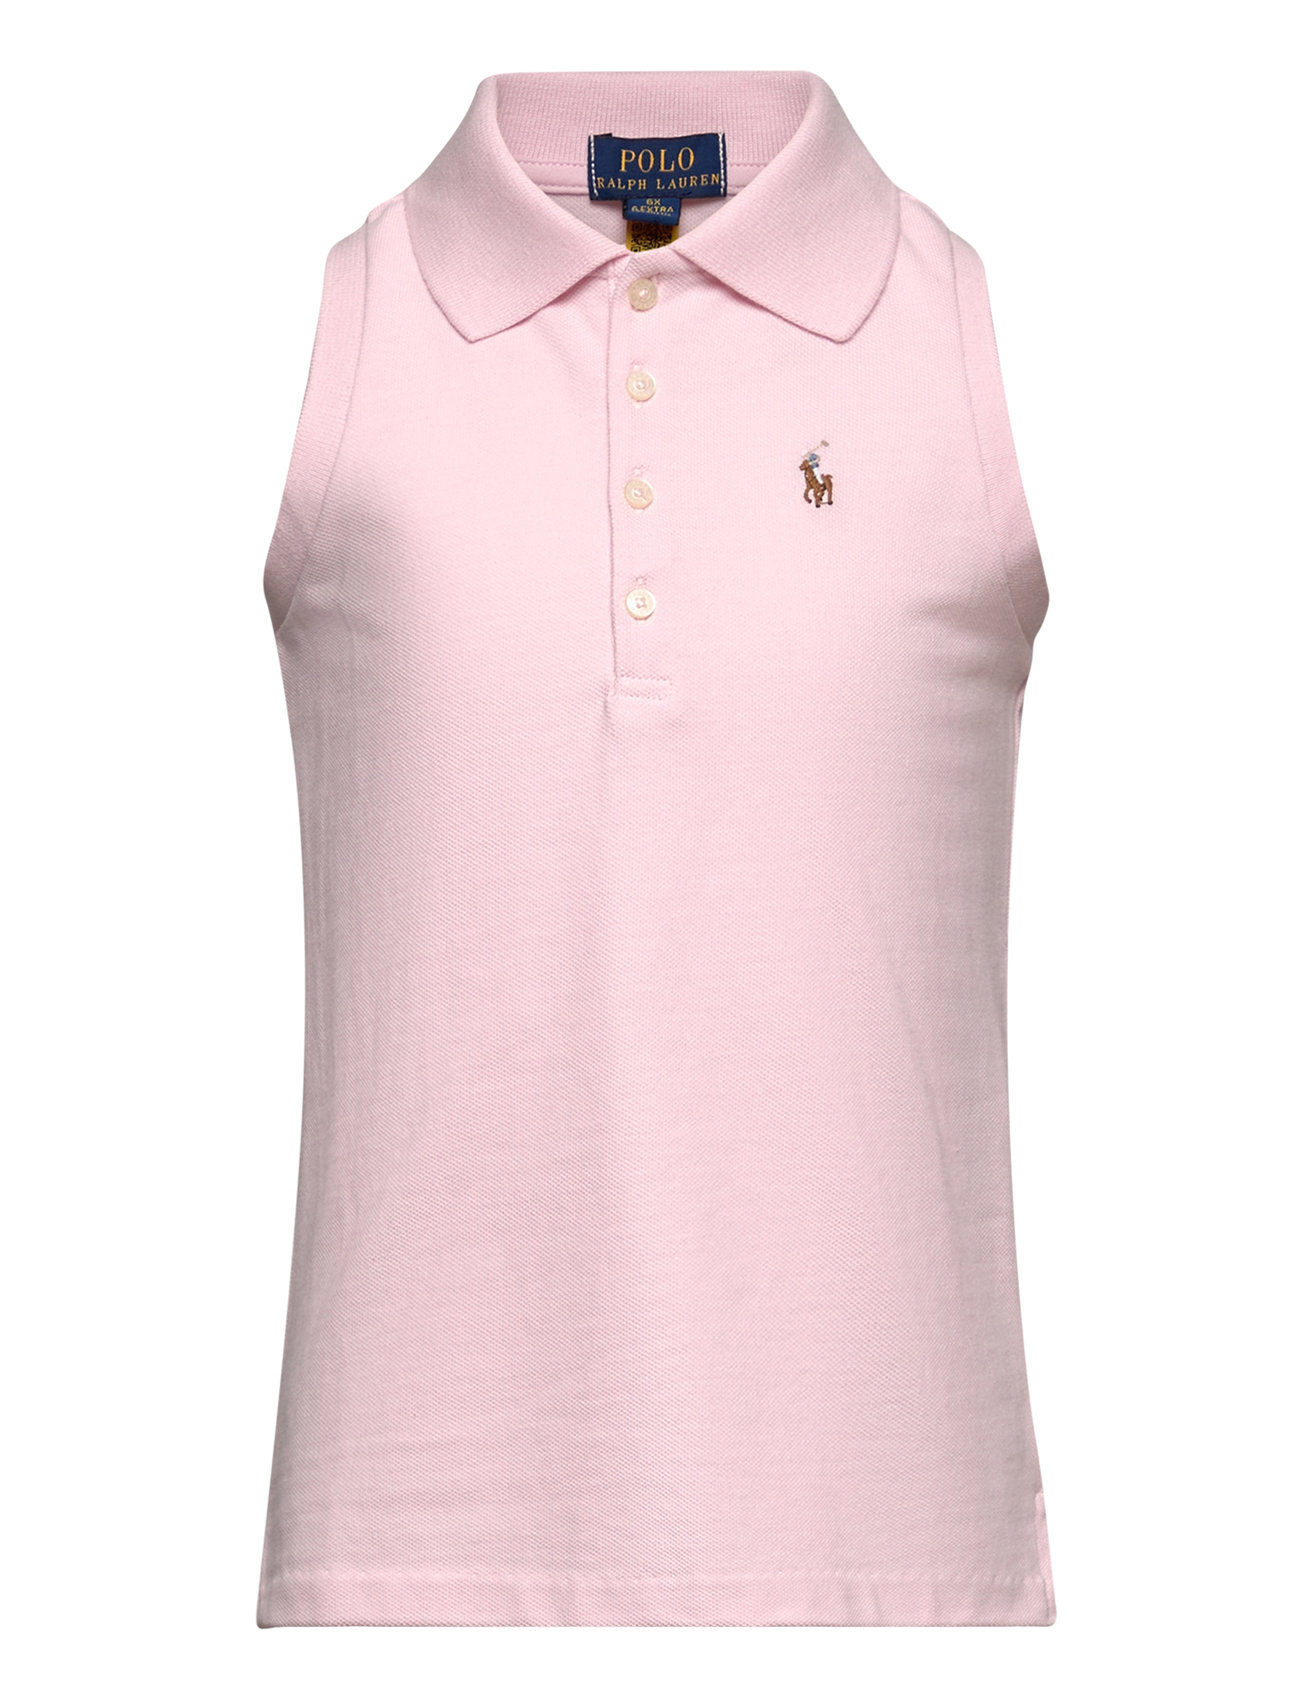 Sleeveless Cotton Mesh Polo Shirt Tops T-shirts Sleeveless Pink Ralph Lauren Kids